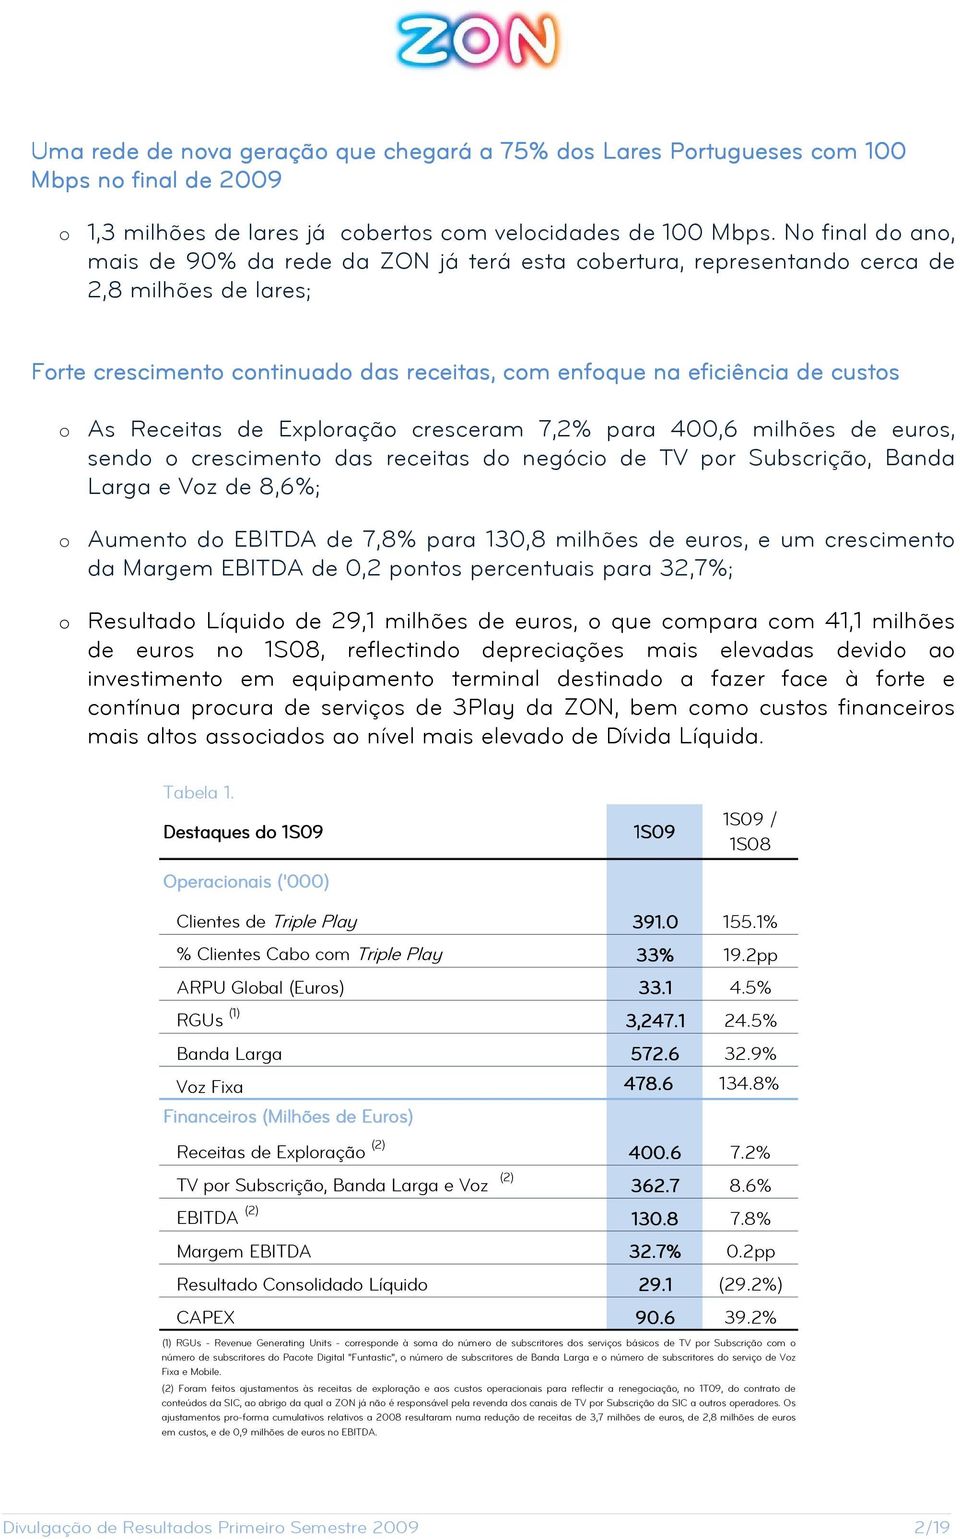 Receitas de Exploração cresceram 7,2% para 400,6 milhões de euros, sendo o crescimento das receitas do negócio de TV por Subscrição, Banda Larga e Voz de 8,6%; o Aumento do EBITDA de 7,8% para 130,8